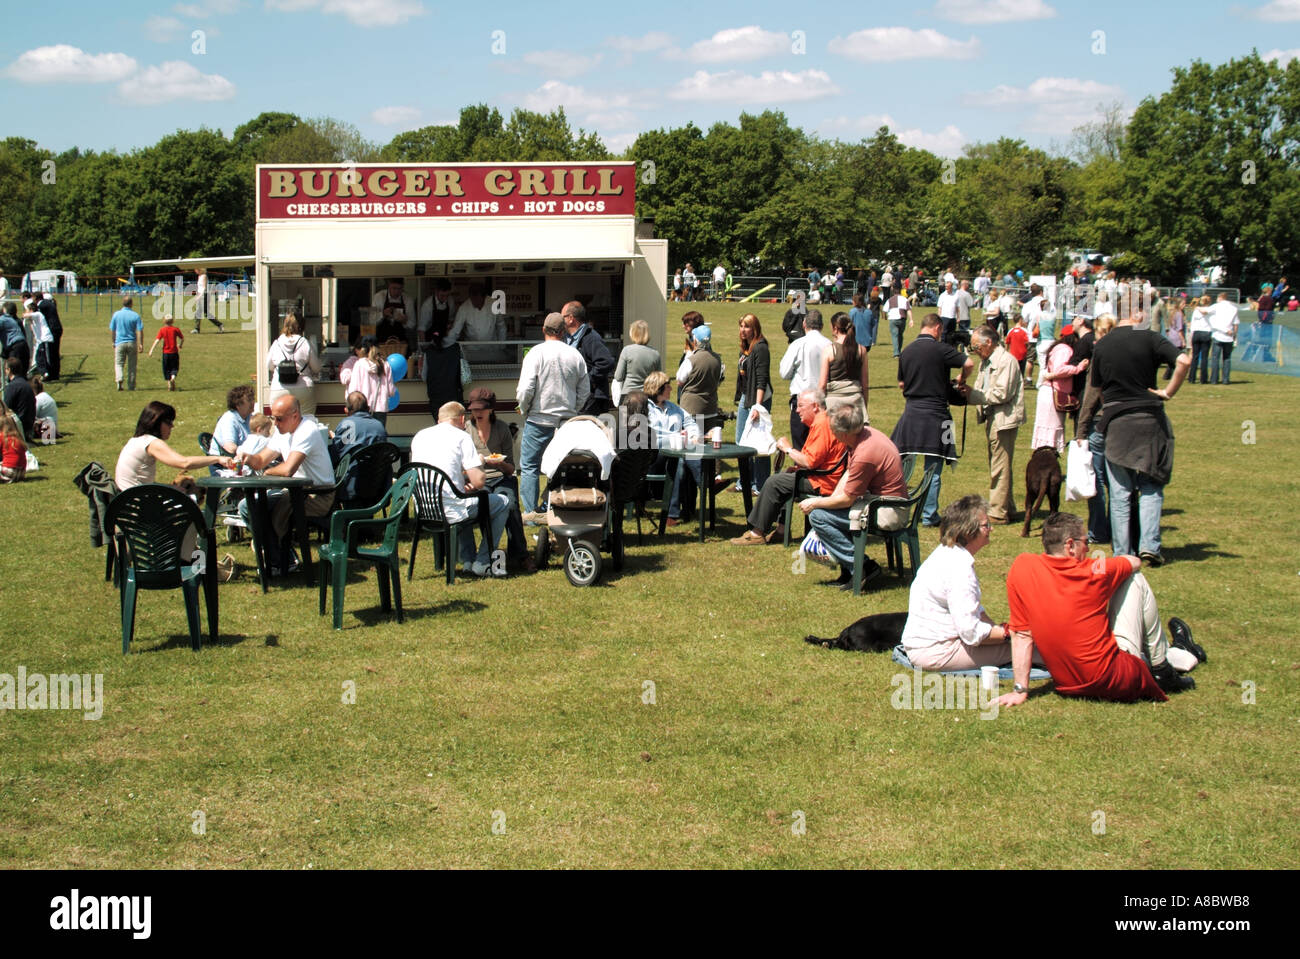 Inghilterra dog show event persone intorno a mobile rimorchio alimentare facility Foto Stock